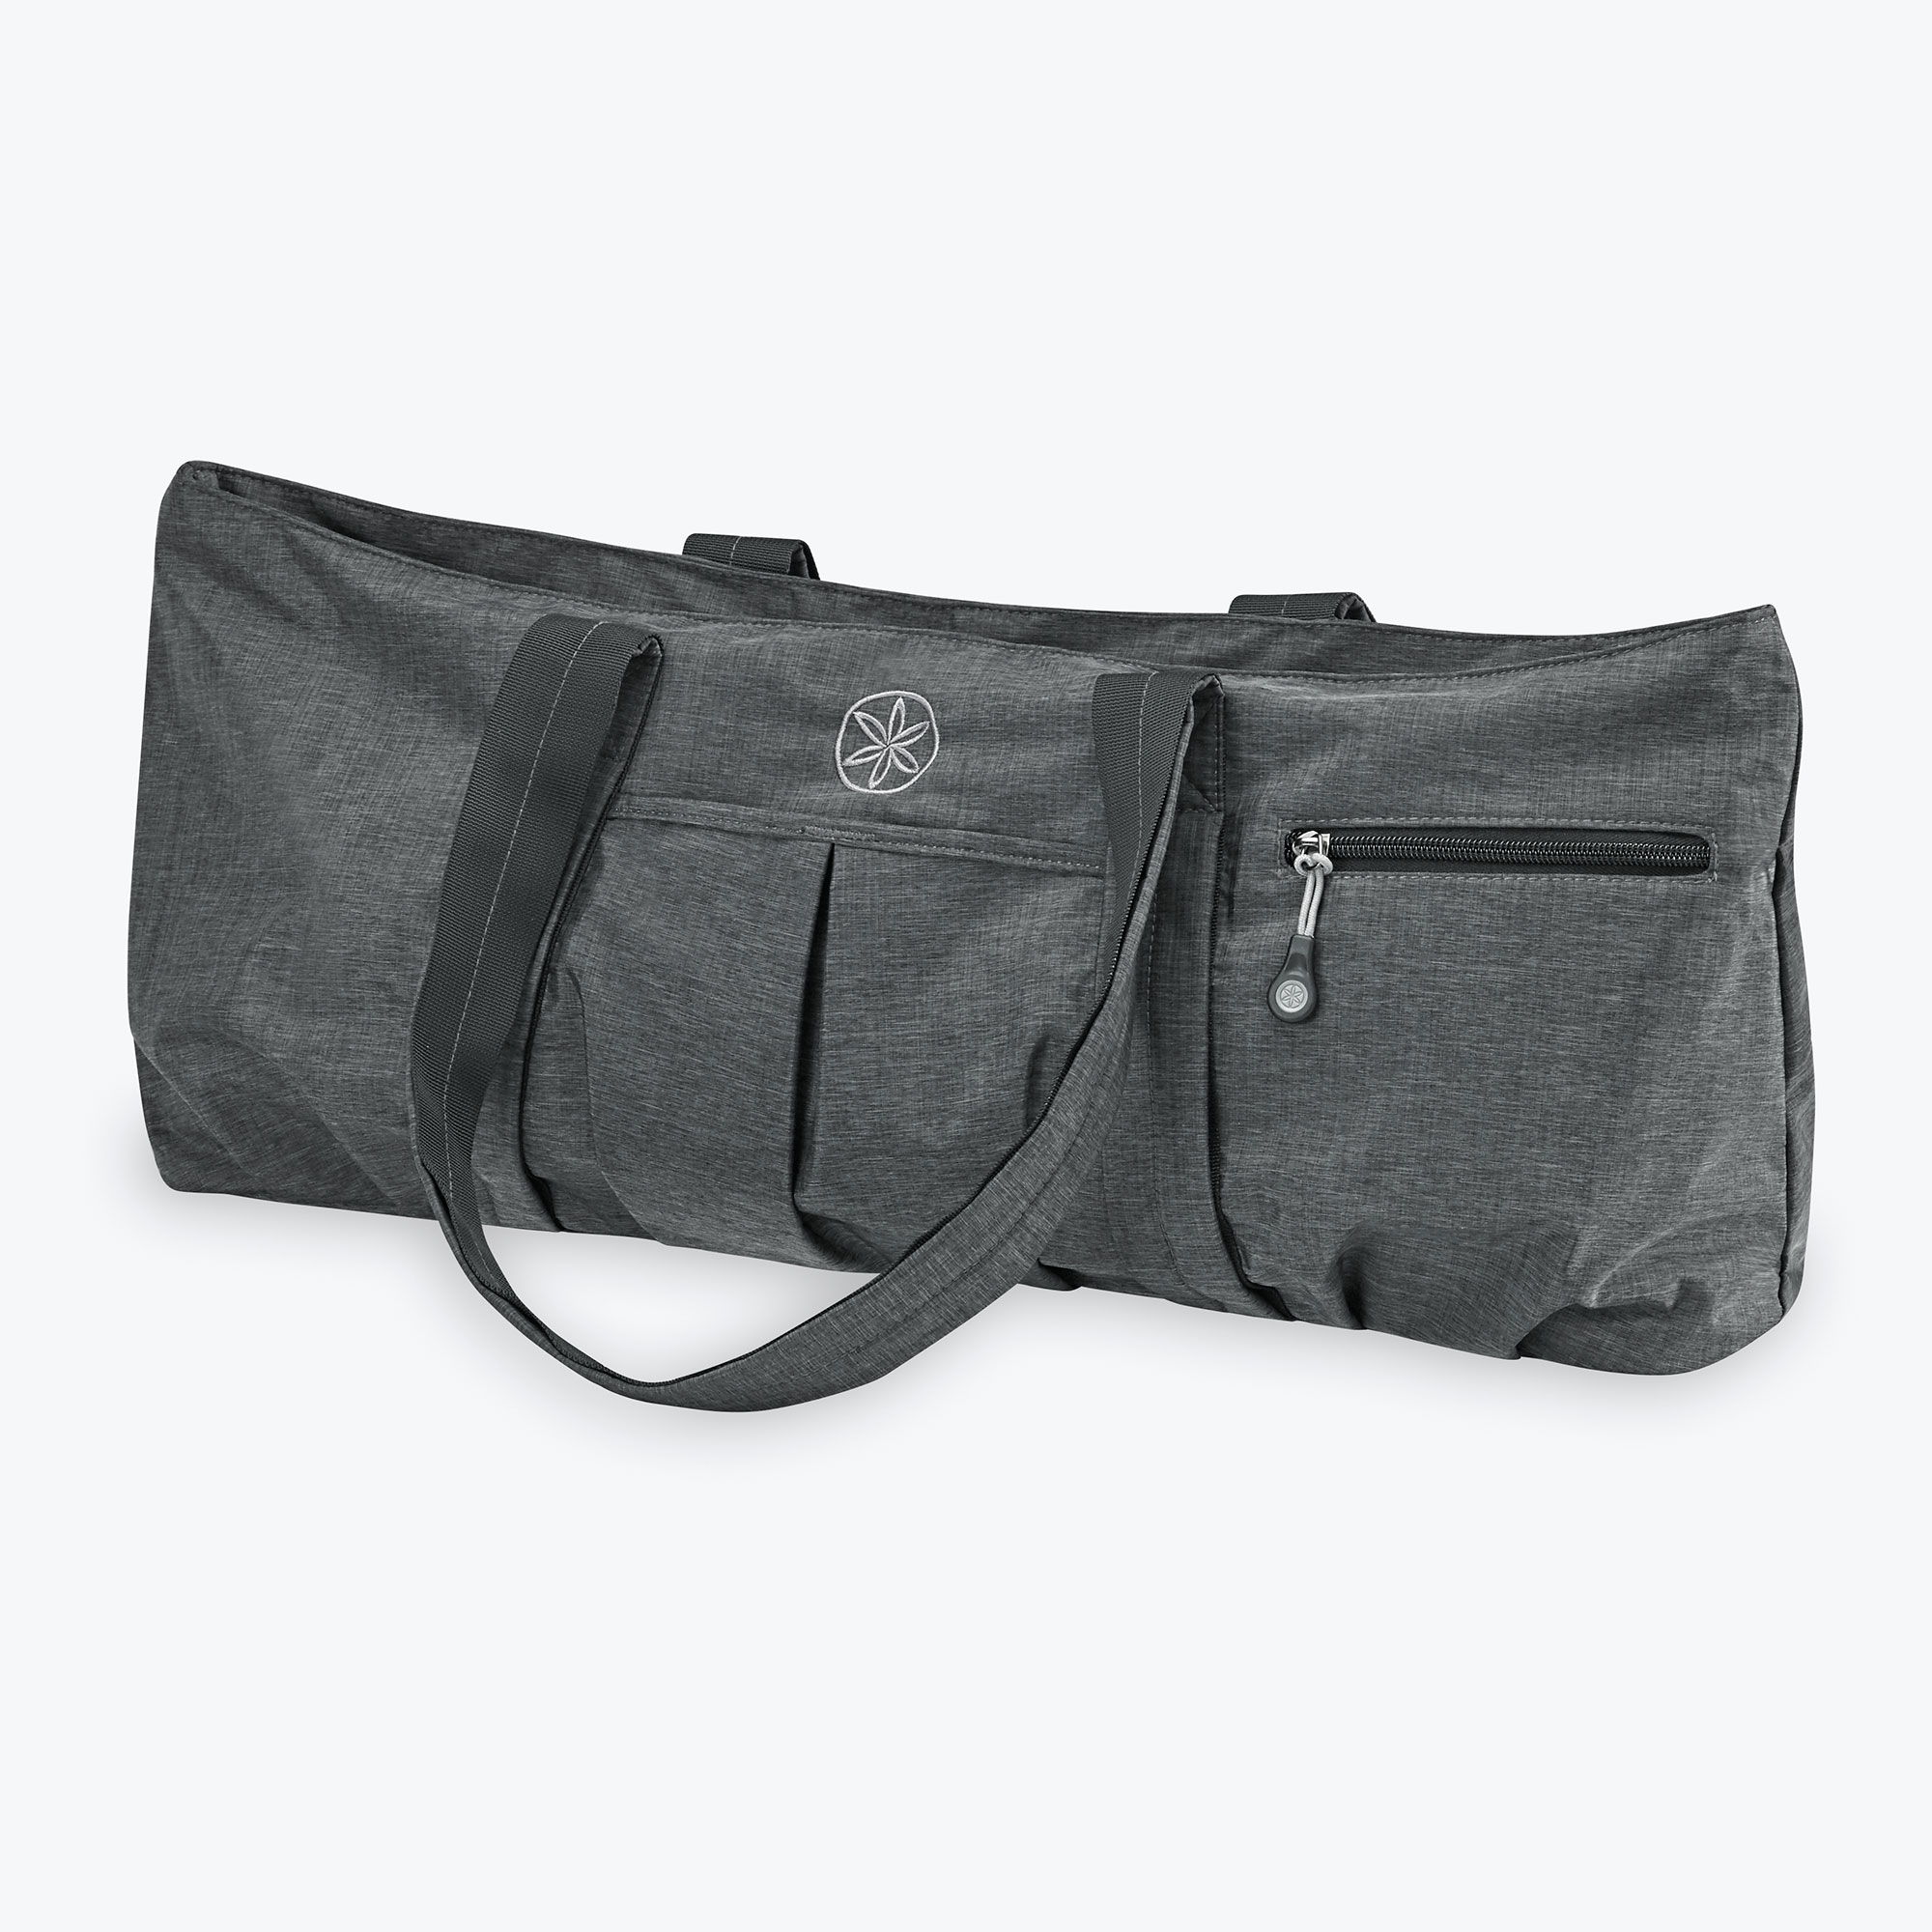 Shop Gaiam Yoga Mat Bags